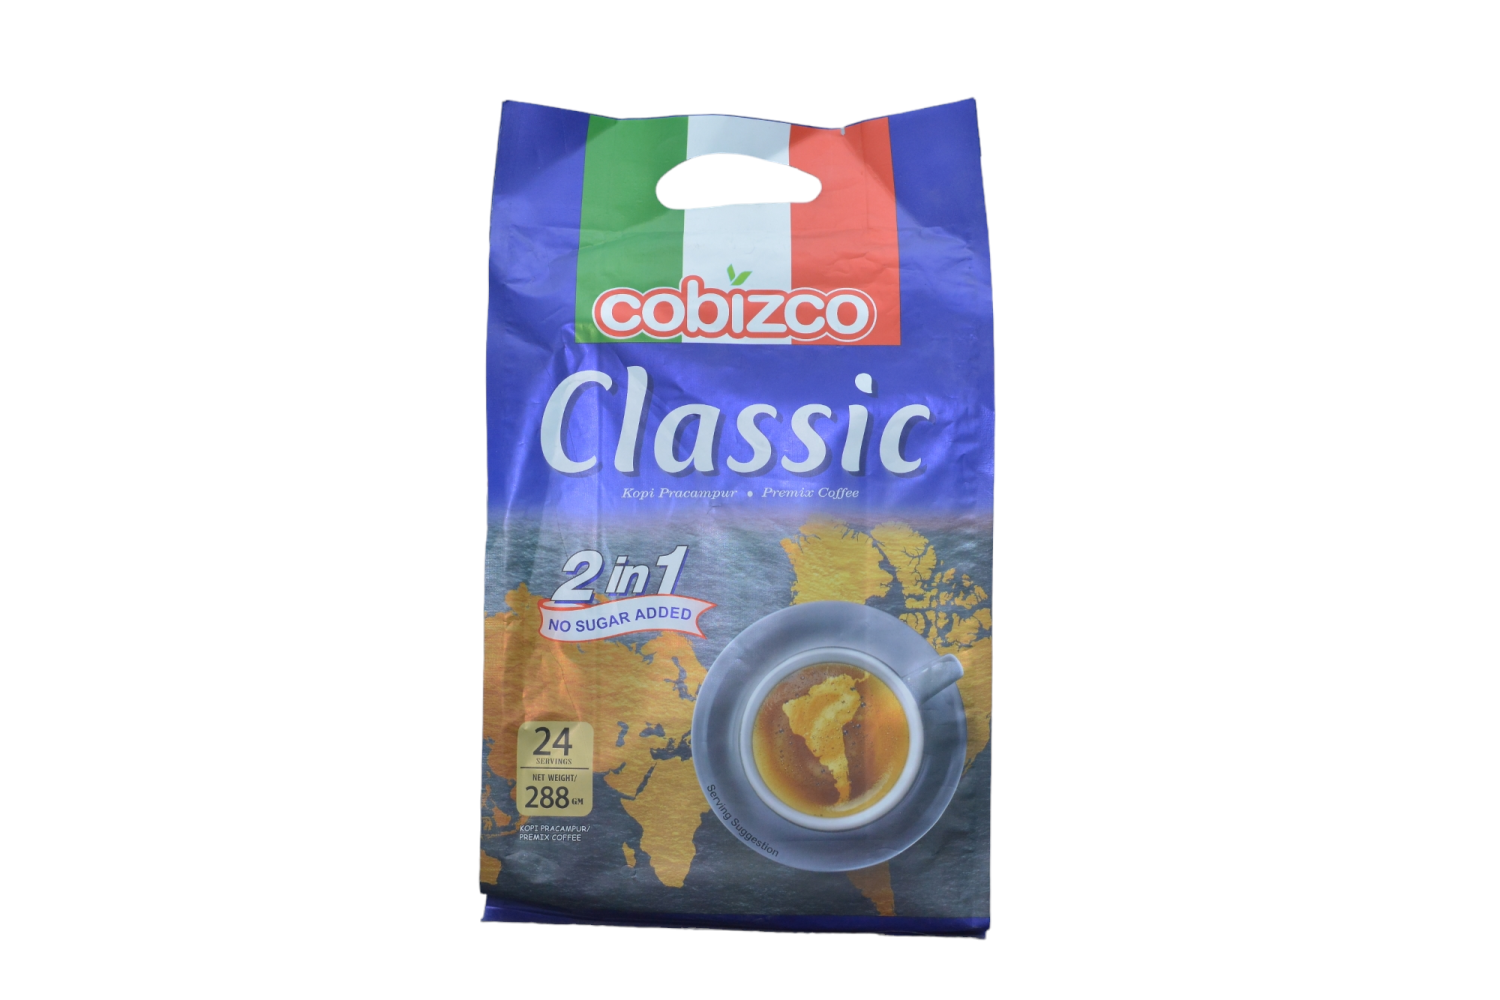 Cobizco Classic 2in1